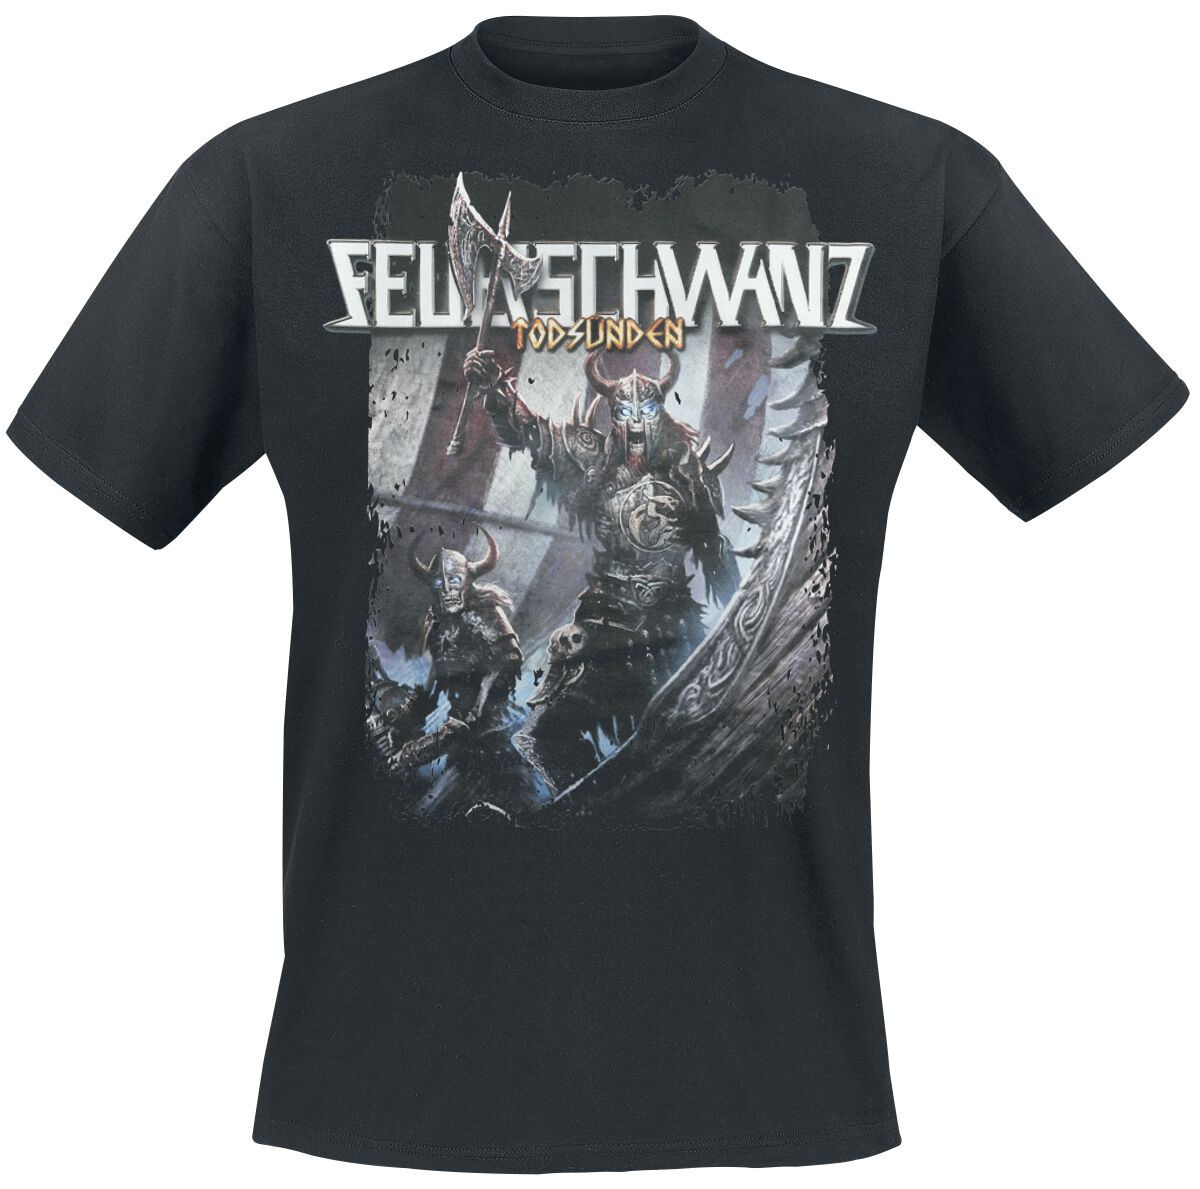 Feuerschwanz T-Shirt - Todsünden Viking - S bis L - für Männer - Größe S - schwarz  - EMP exklusives Merchandise!